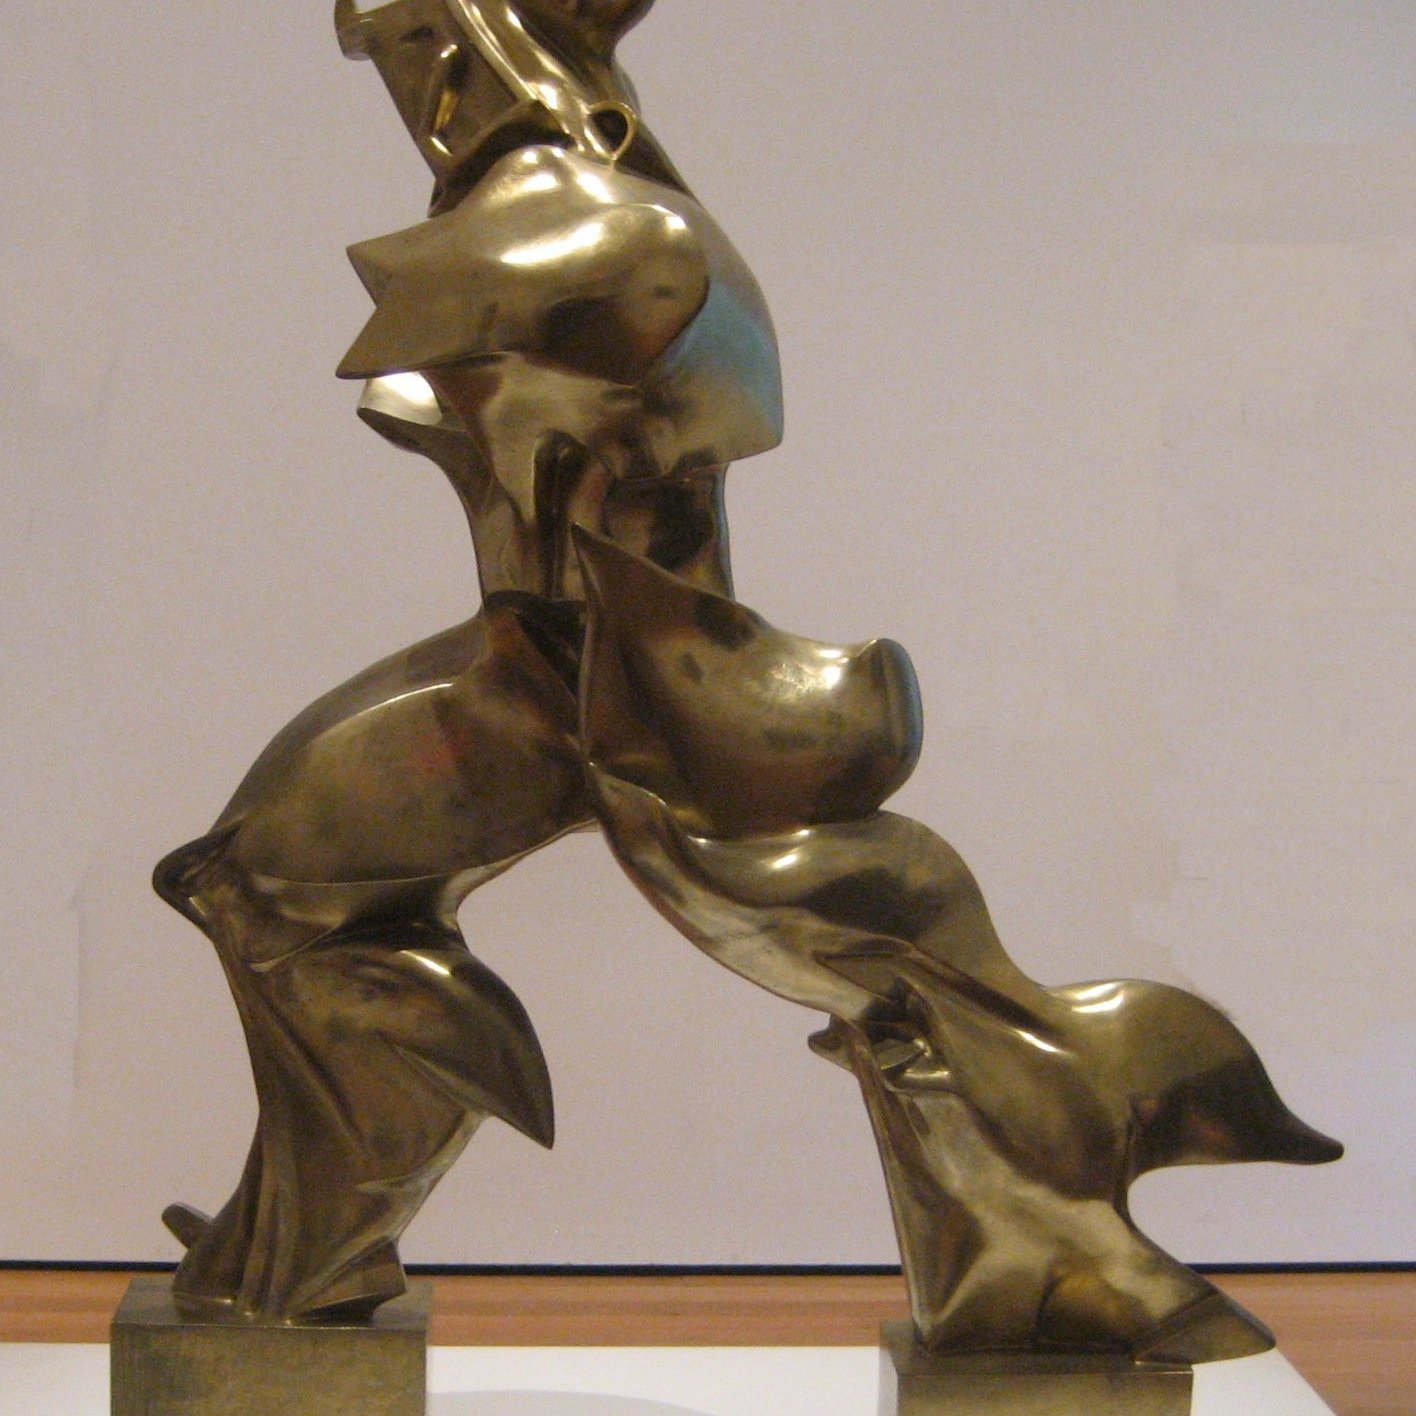 Umberto Boccioni, Forme uniche nella continuità dello spazio, 1913